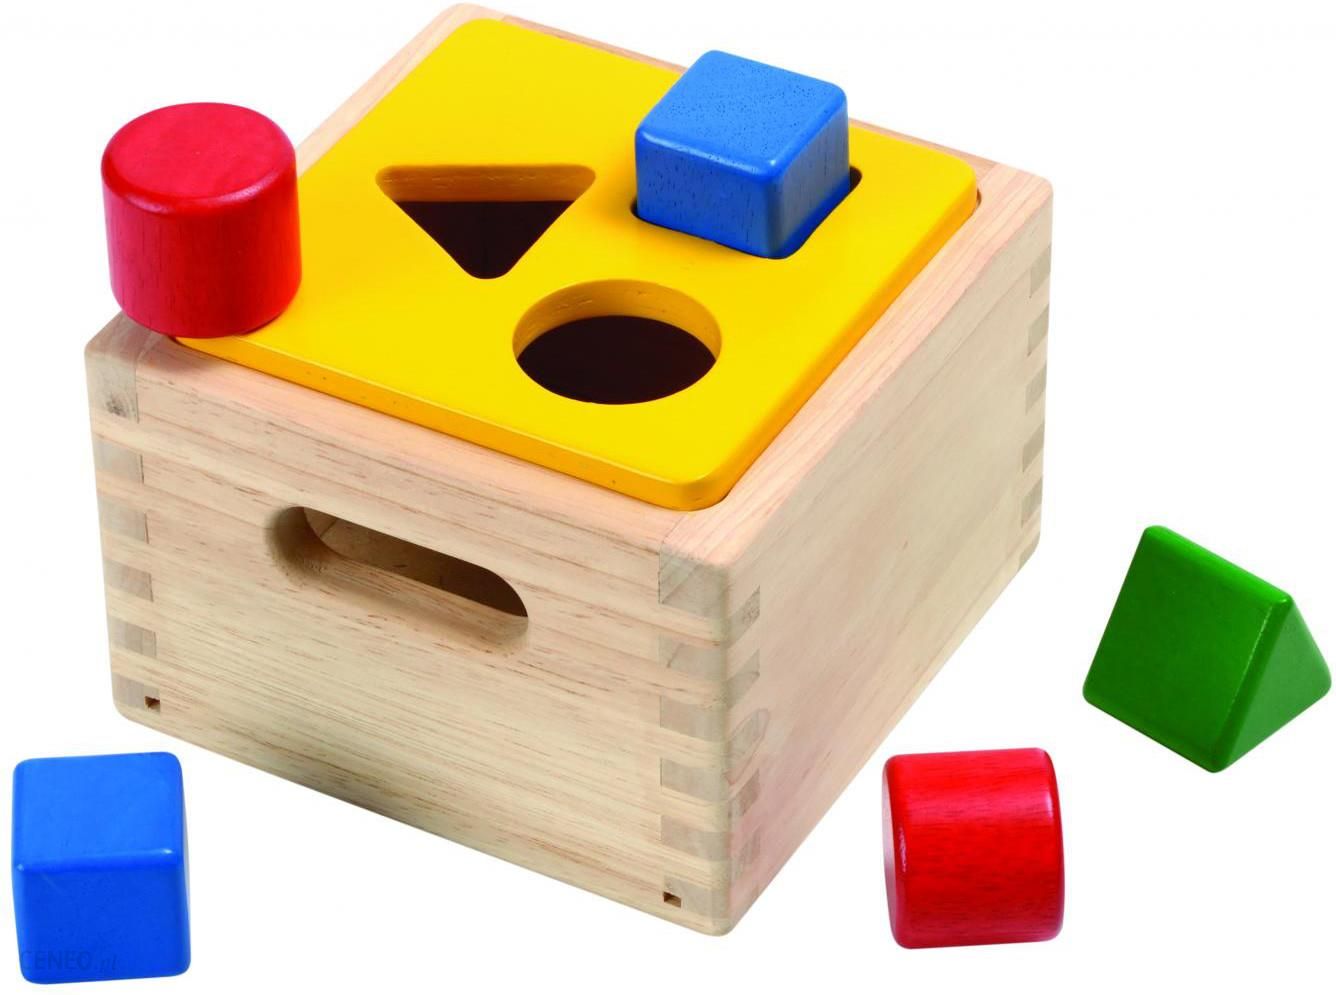 Коробка форм купить. Сортер Plan Toys "доска с геометрическими фигурами". Сортер Plan Toys поезд, 5119. Melissa & Doug: сортер "куб". Сортер Red Box активный куб.